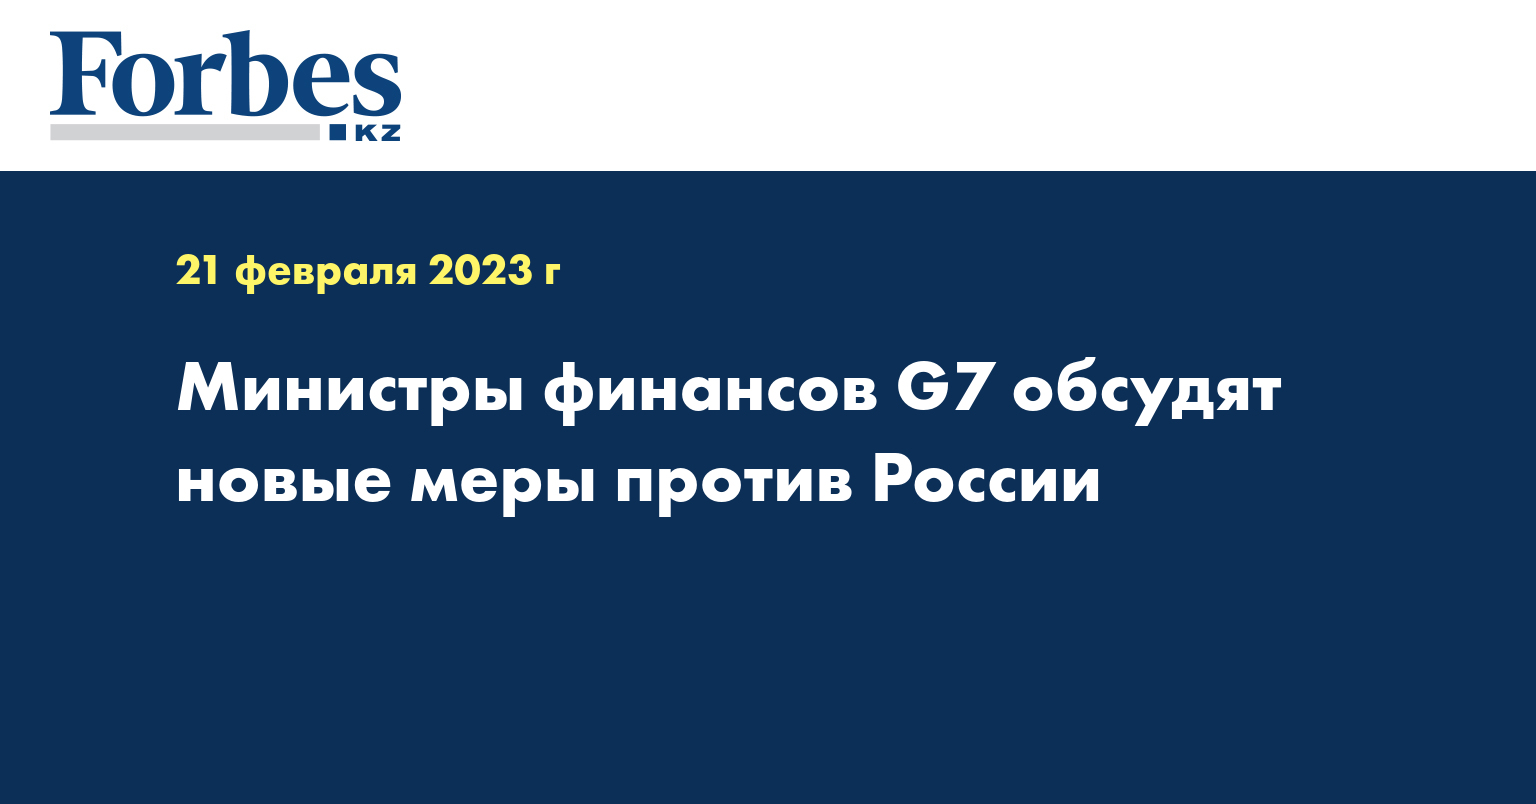 Министры финансов G7 обсудят новые меры против России